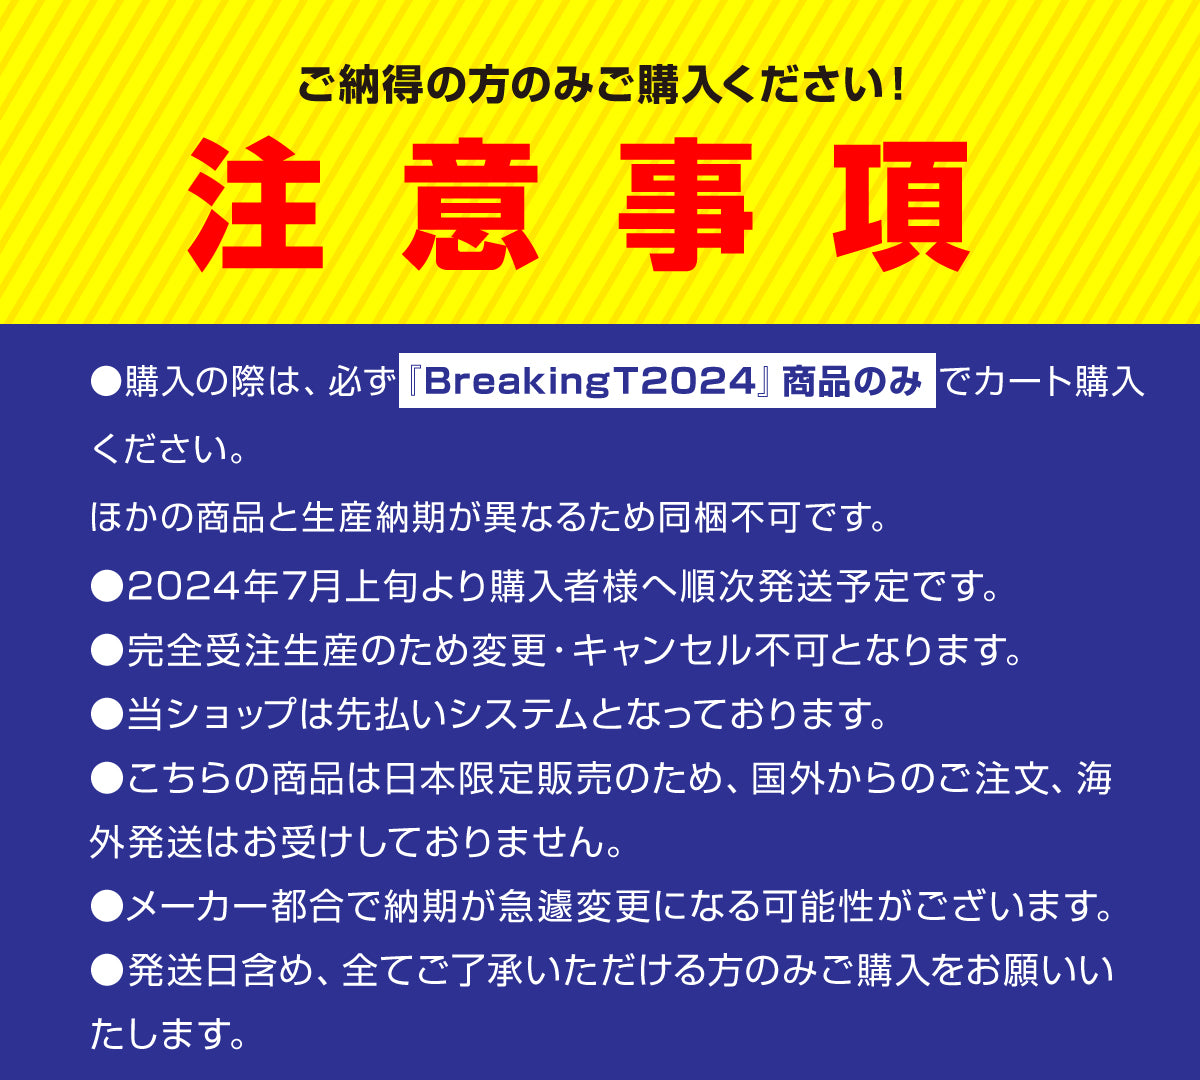 【BreakingT2024】SEIYA SUZUKI「SUPERSTAR POSE」ステッカー